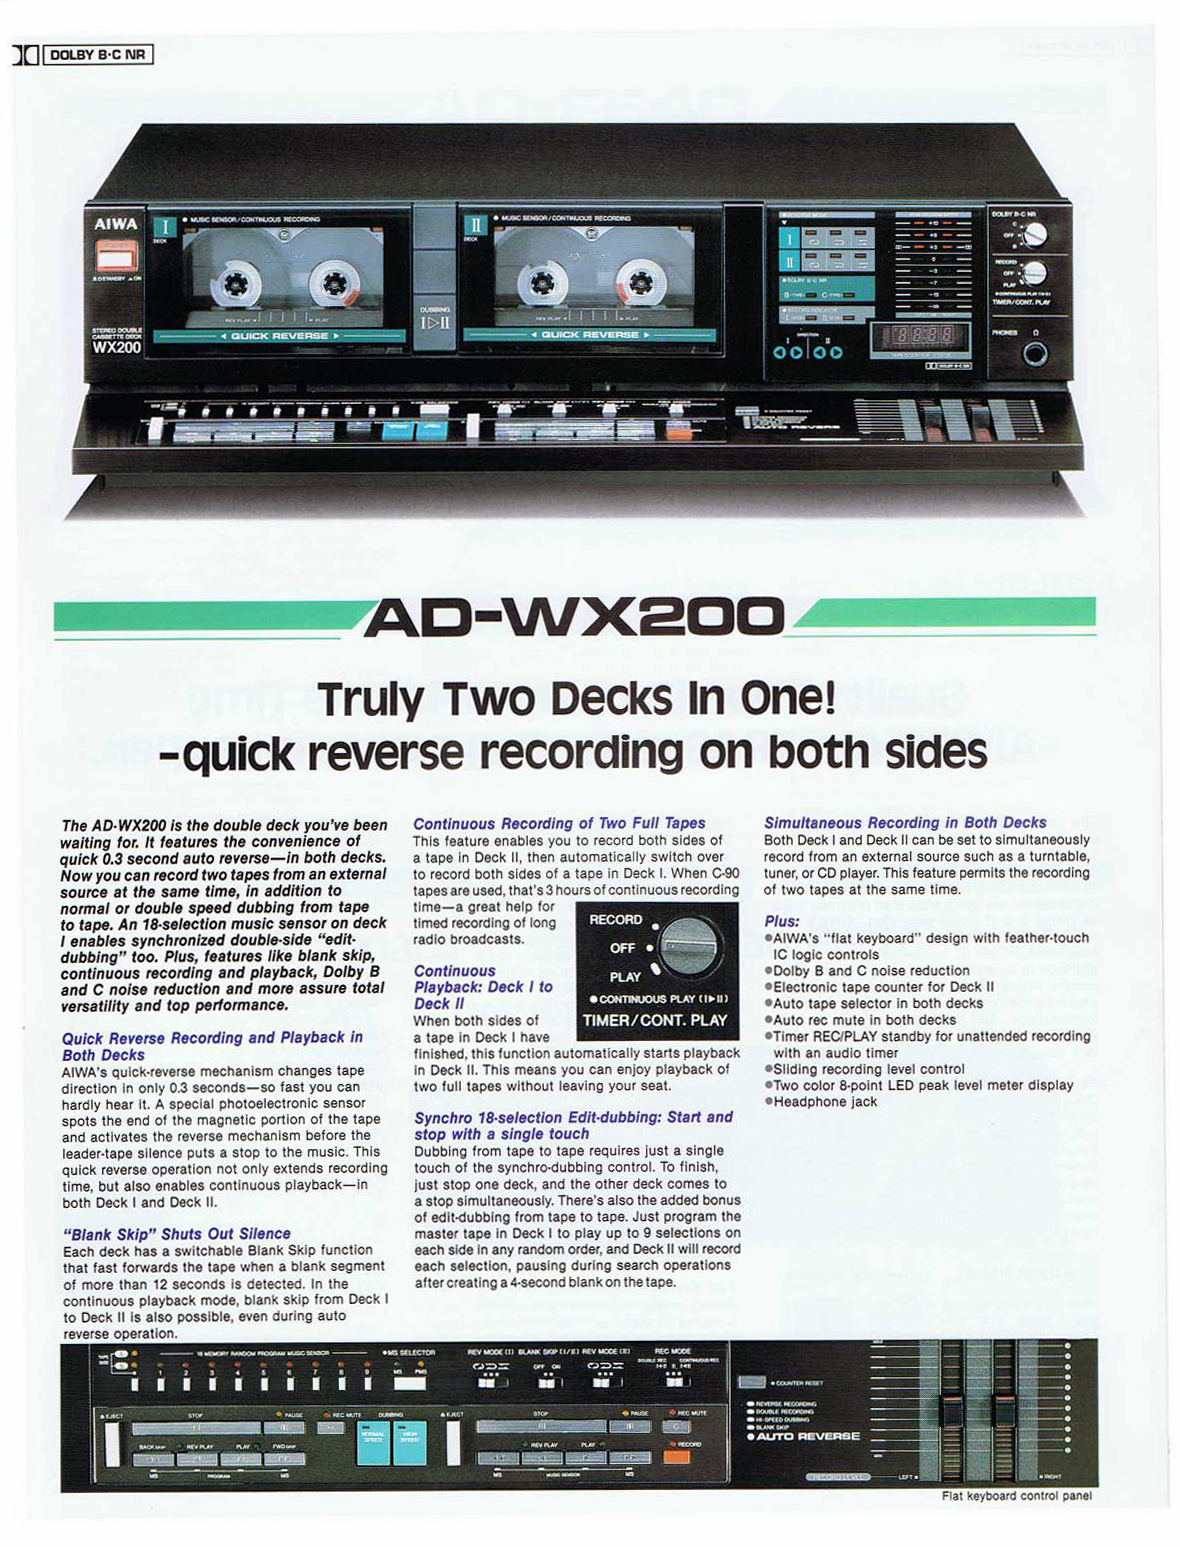 Aiwa AD-WX 200-Prospekt-1986.jpg